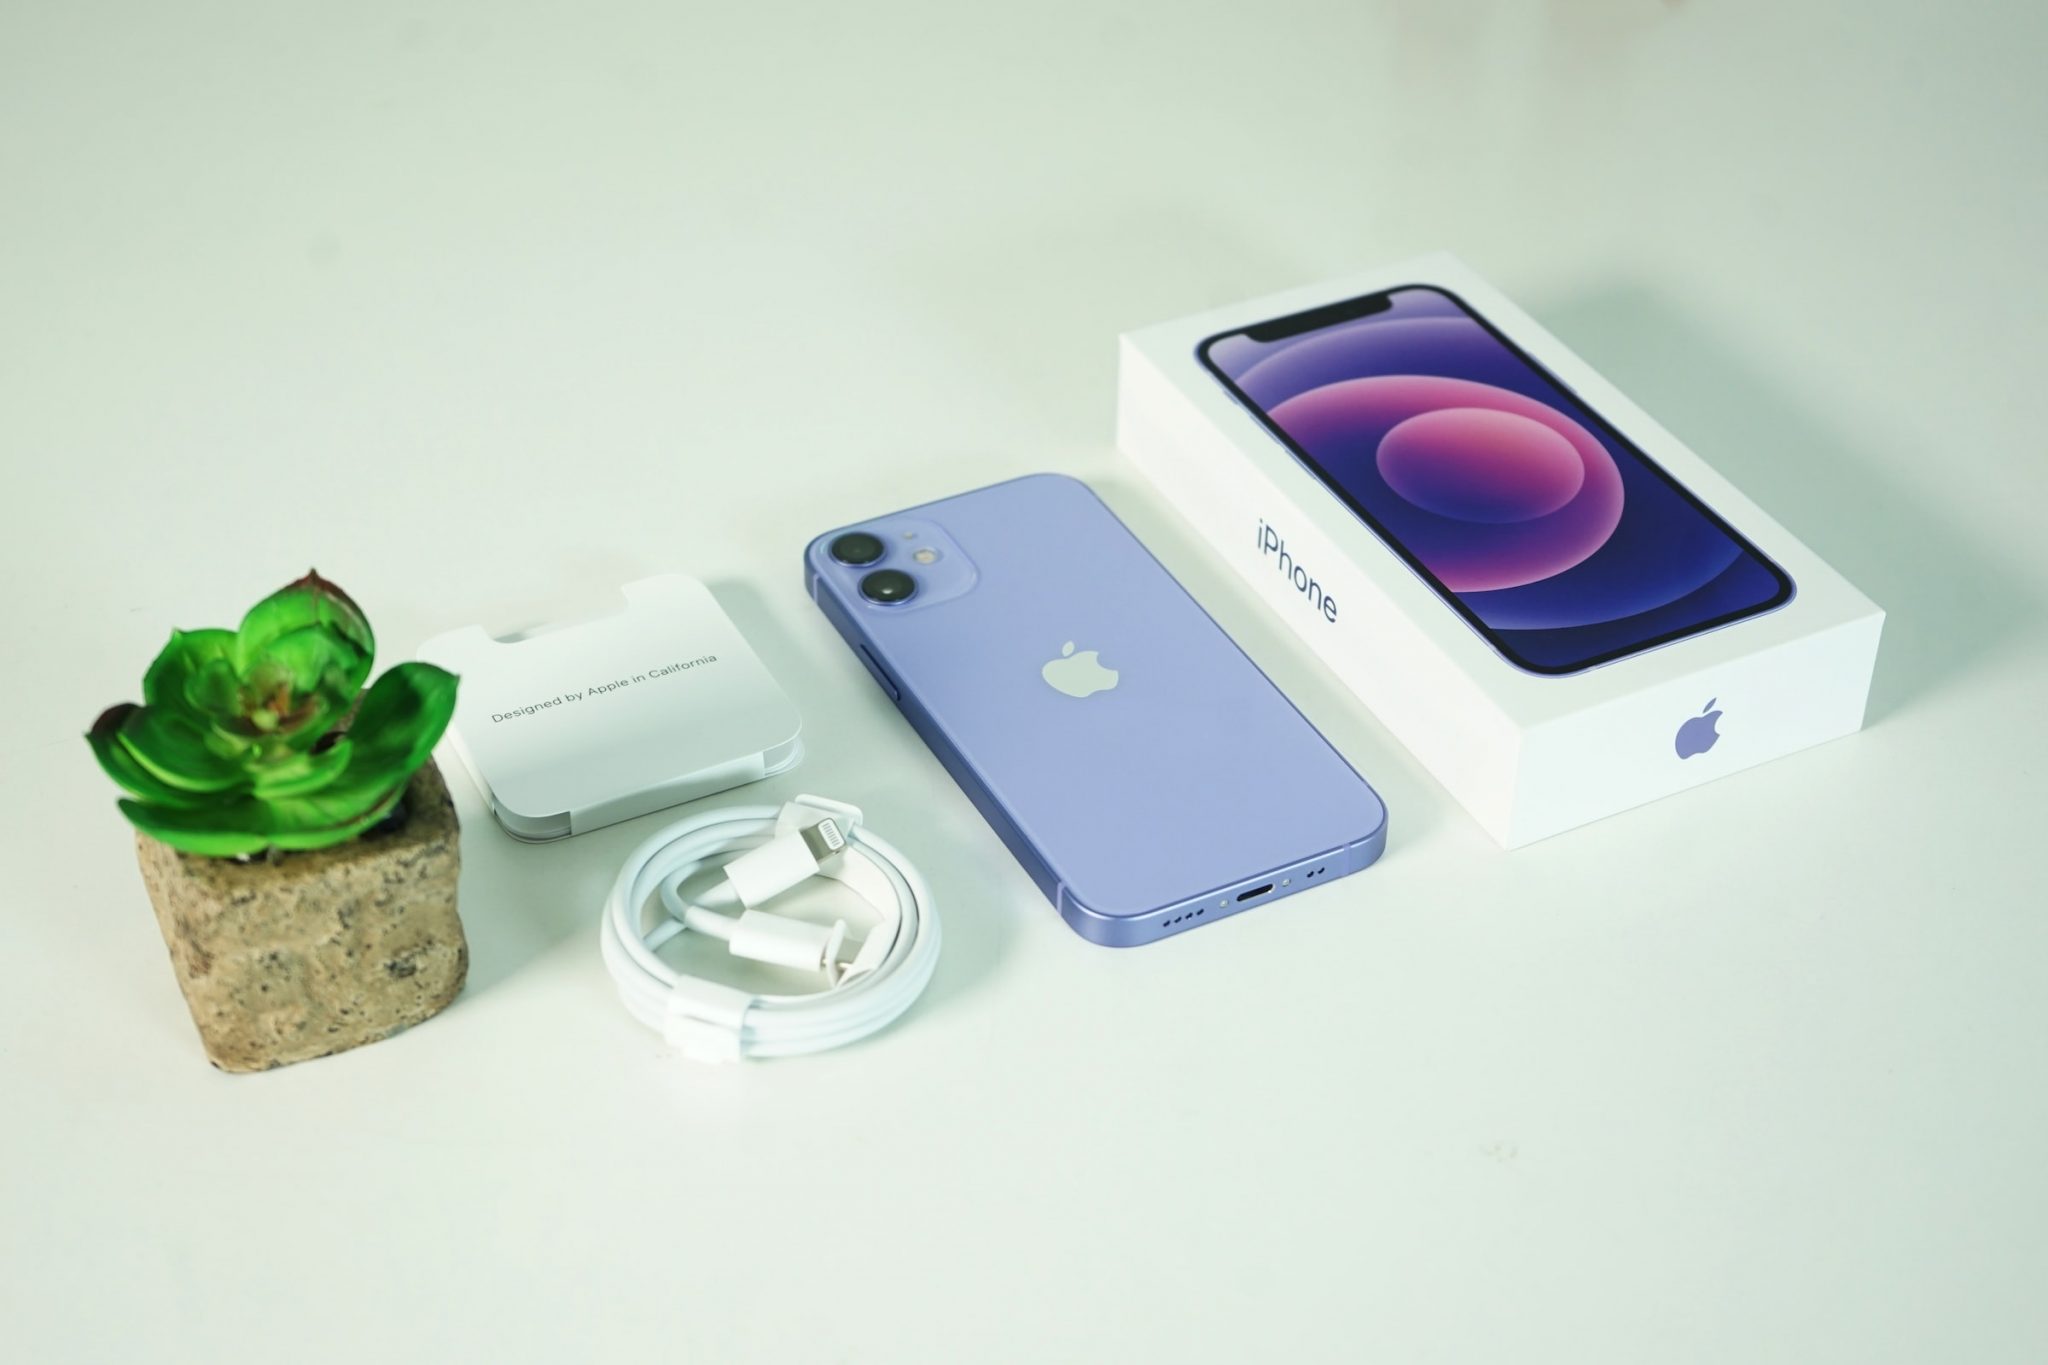 iPhone 12 mini purple and box